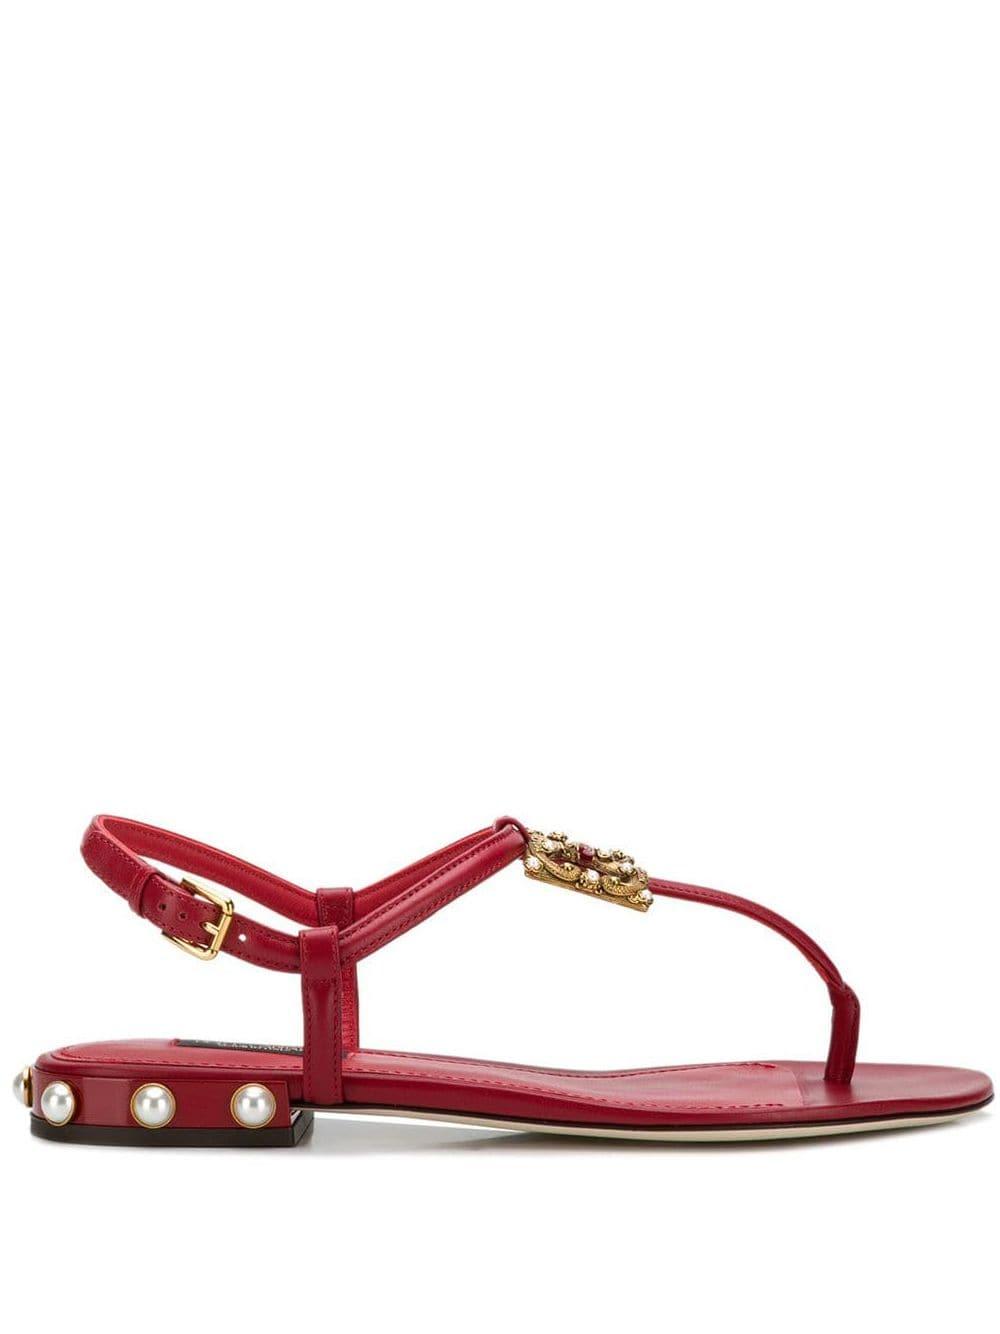 43% di sconto Sandali AmoreDolce & Gabbana in Pelle di colore Rosso Donna Scarpe da Scarpe basse e piatte da Sandali bassi 